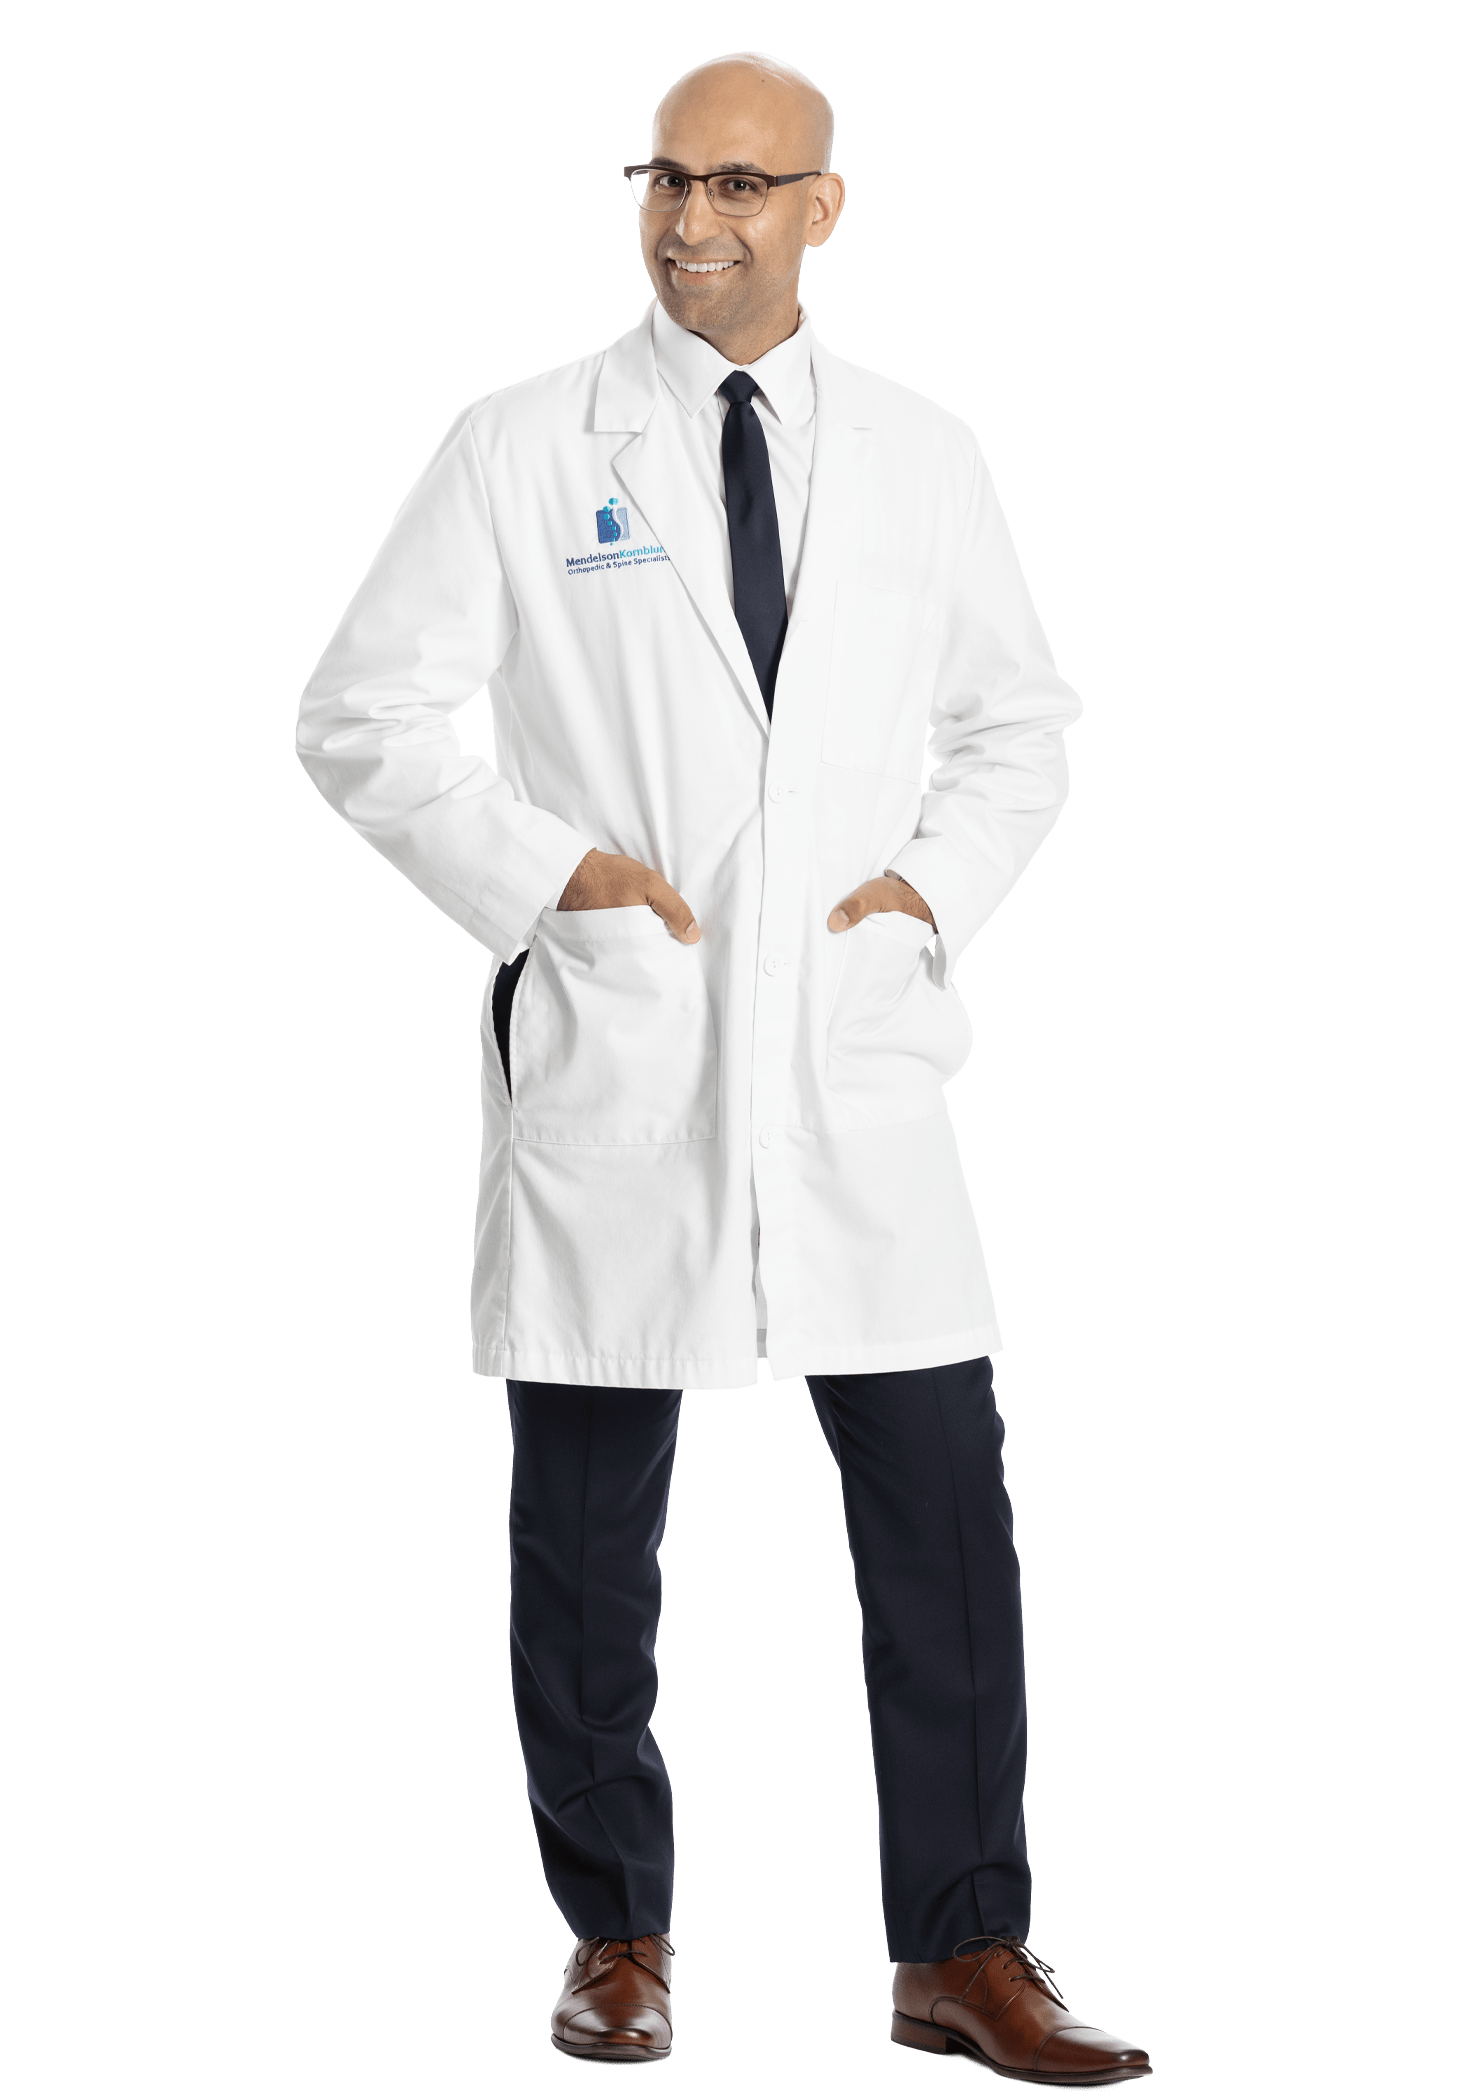 Mendelson Kornblum Orthopedics (MKO) profile image Dr. Preetinder Perry Bhullar